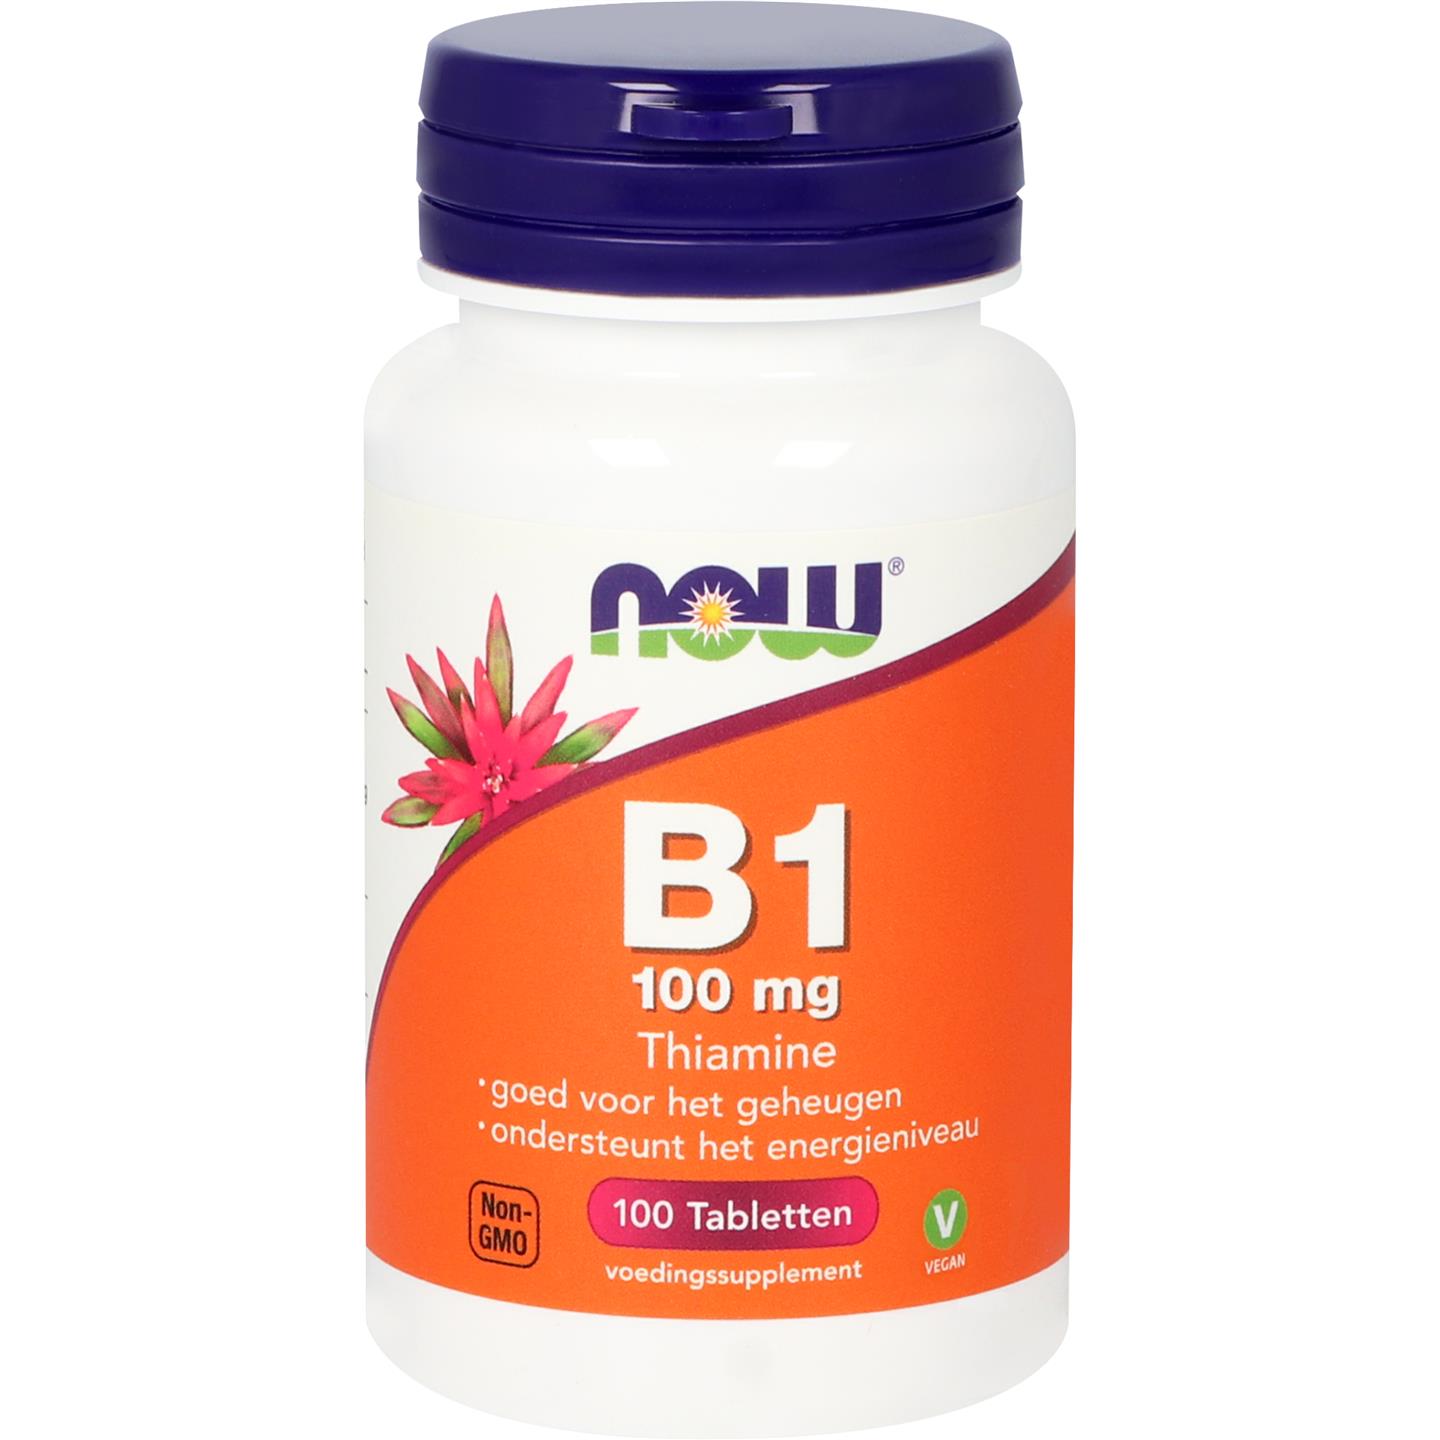 B-1 100 mg